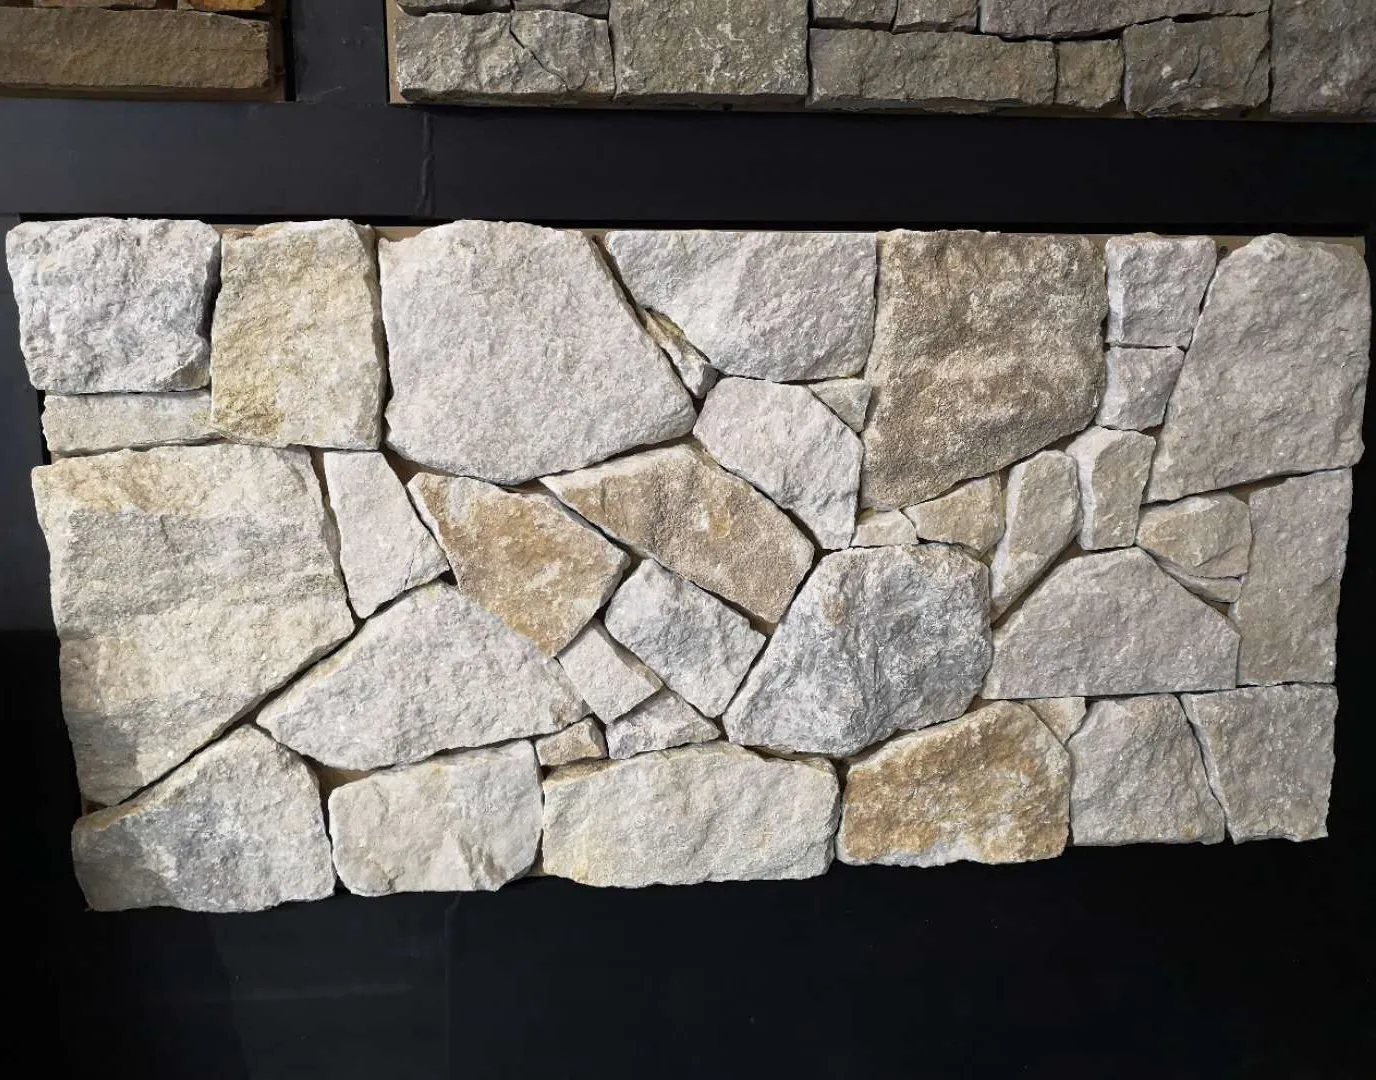 SHIHUI Großhandels preis Buff Quarzit Trocken stapel Stein furnier Natürliche Außen stein Wand verkleidung Außen stein für Wände